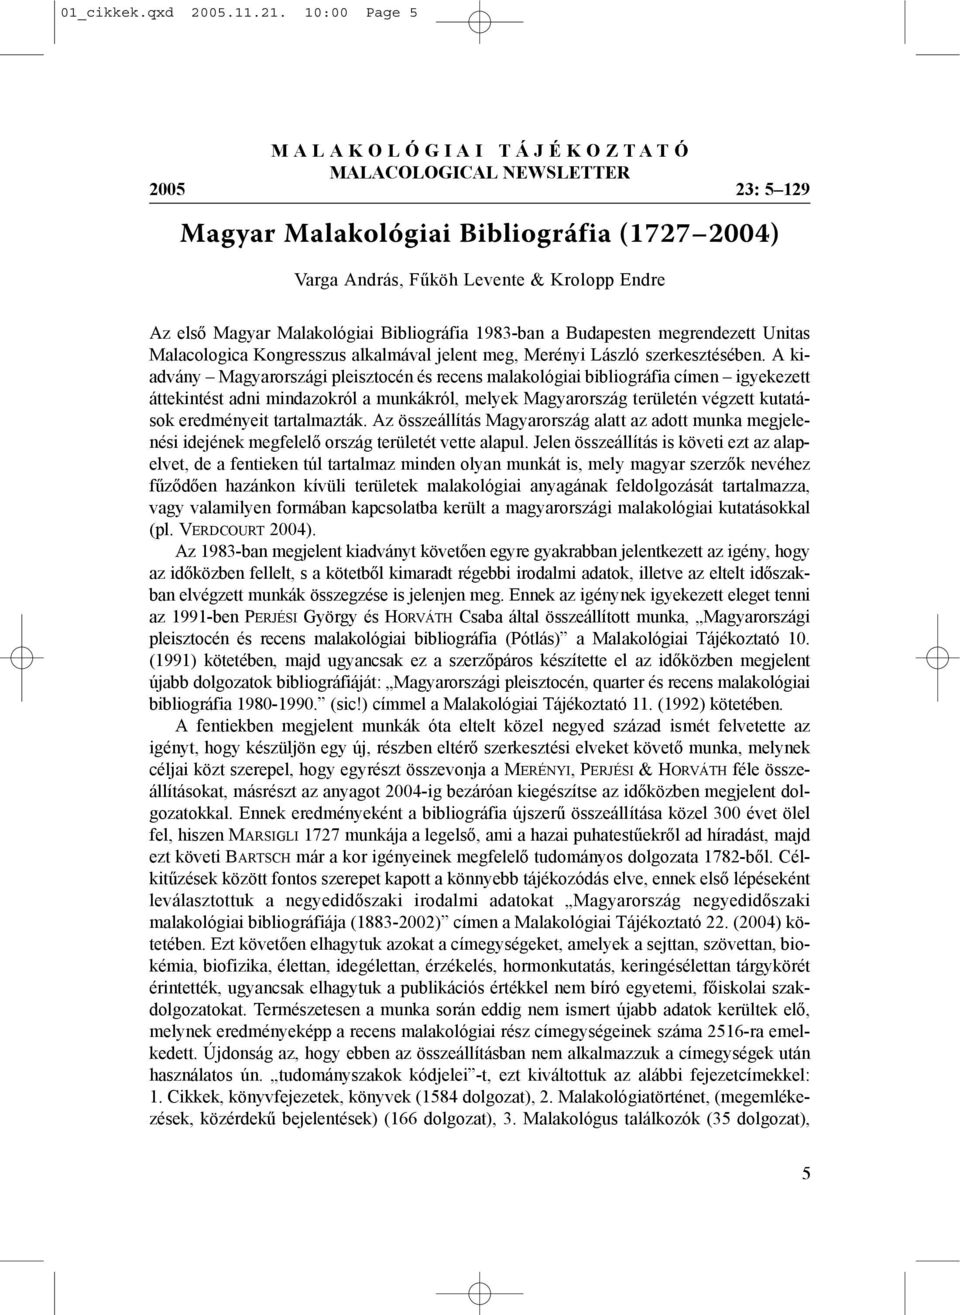 Bibliográfia 1983-ban a Budapesten megrendezett Unitas Malacologica Kongresszus alkalmával jelent meg, Merényi László szerkesztésében.